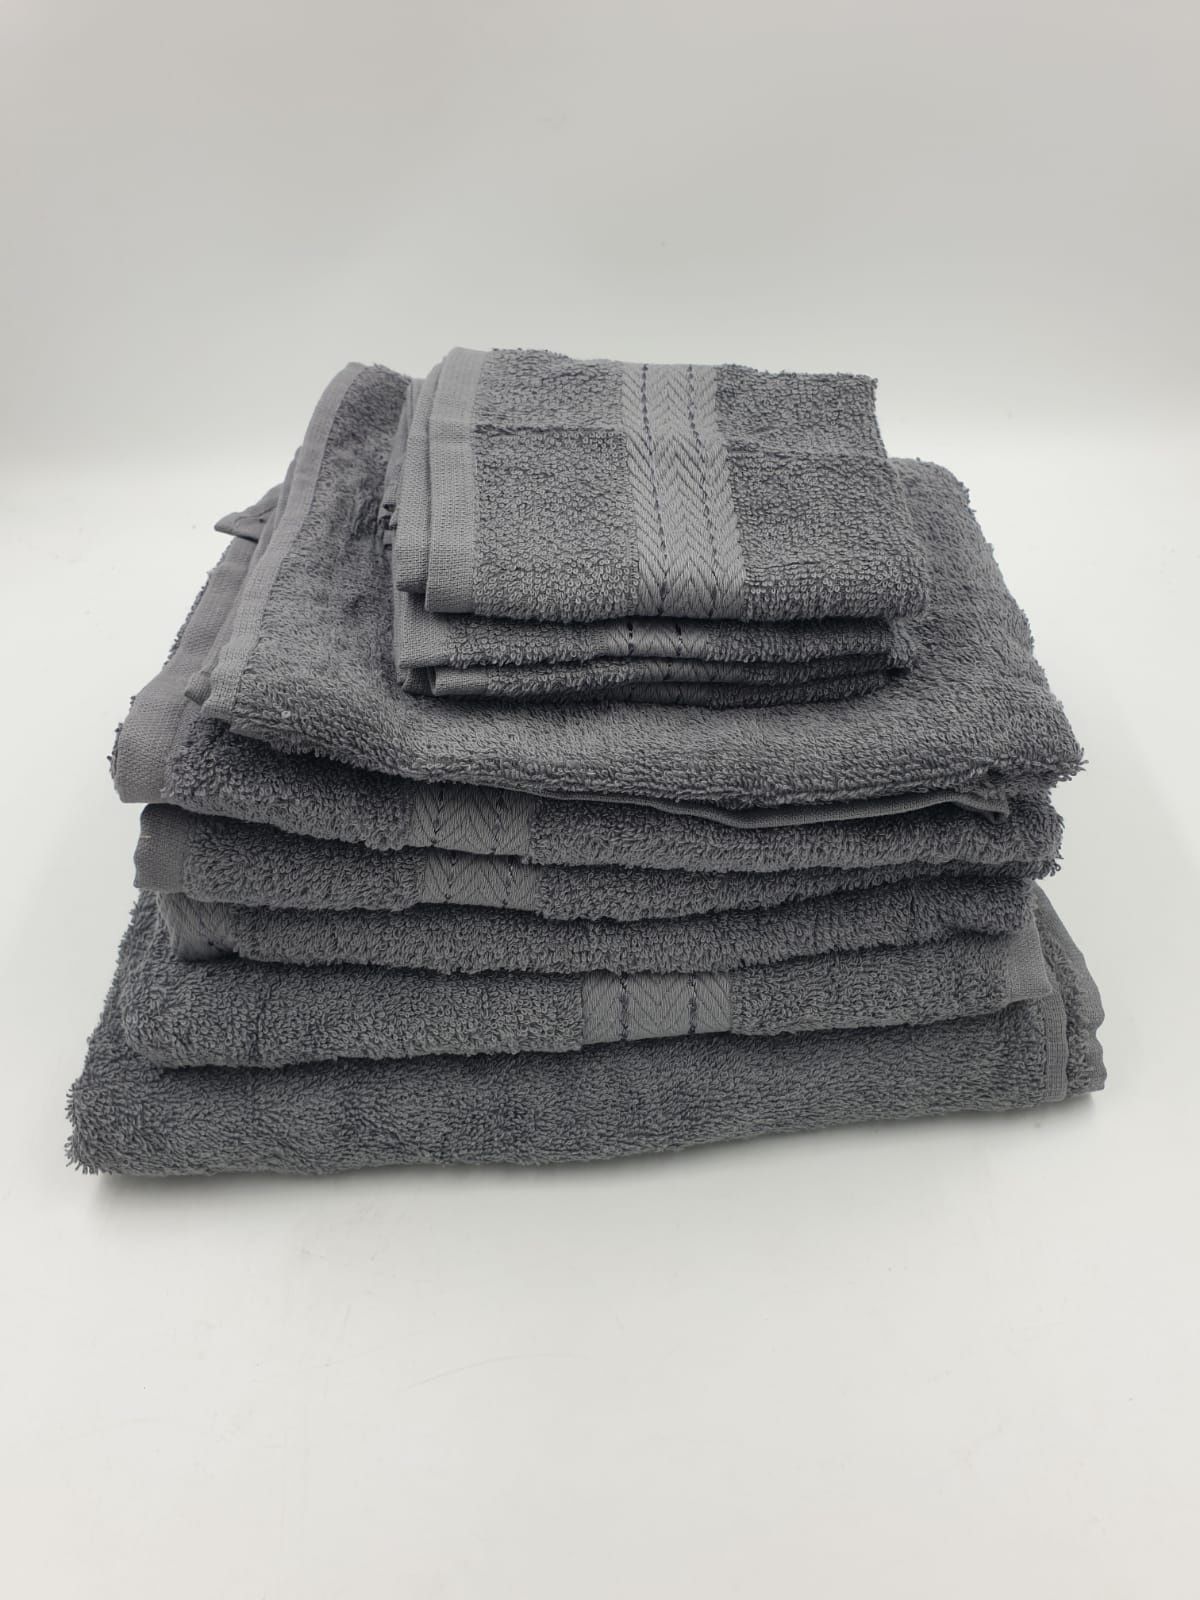 Zestaw ręczników 4 - 30 x 30 cm, 4 -50 x 80 cm , 2 - 70 x 120 cm